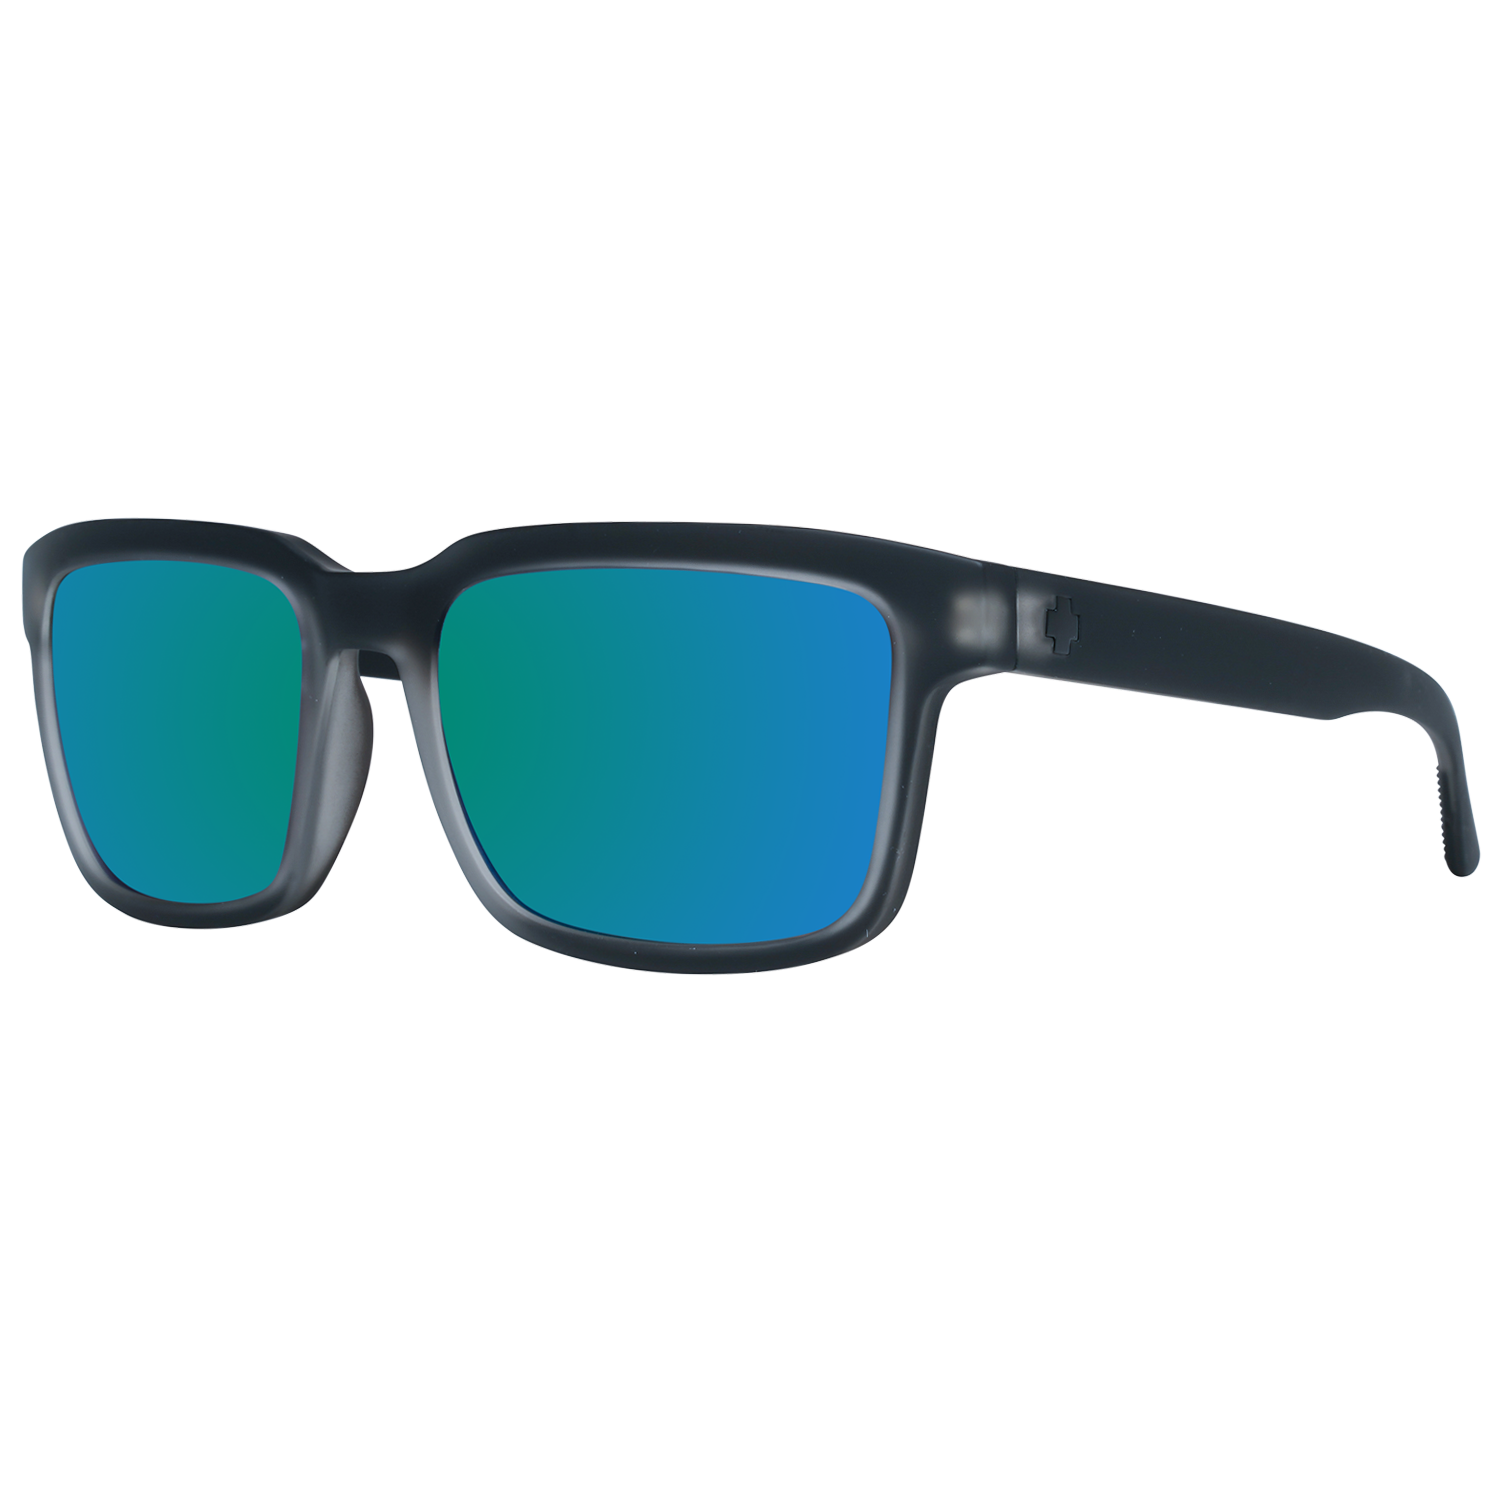 Spy Sunglasses Spy Sunglasses 673520102356 Helm 2 57 Eyeglasses Eyewear UK USA Australia 